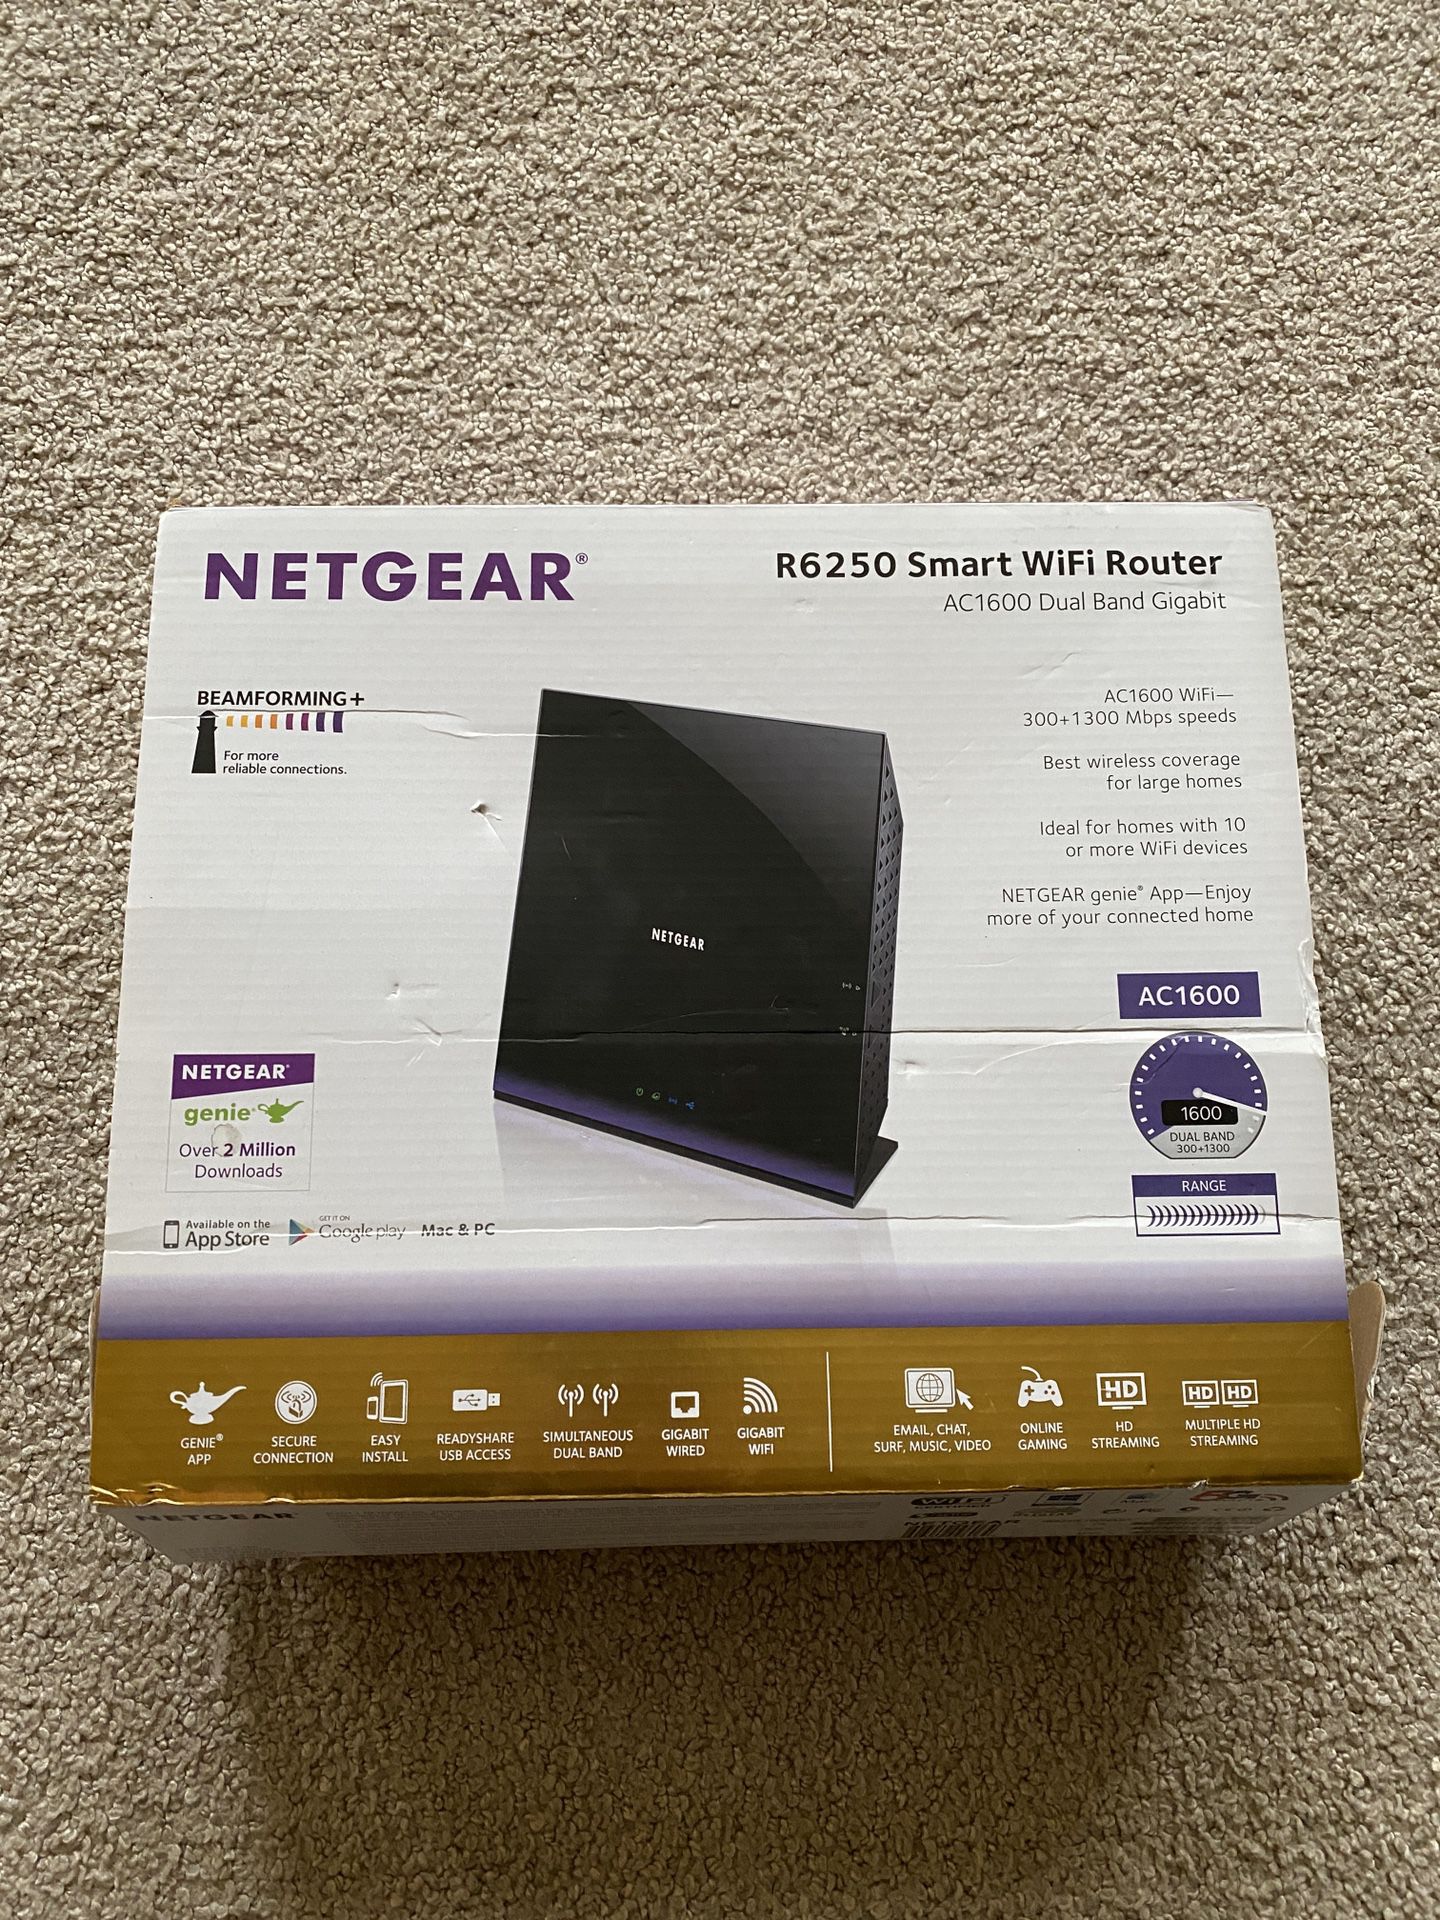 Netgear R6250 Smart WiFi Router